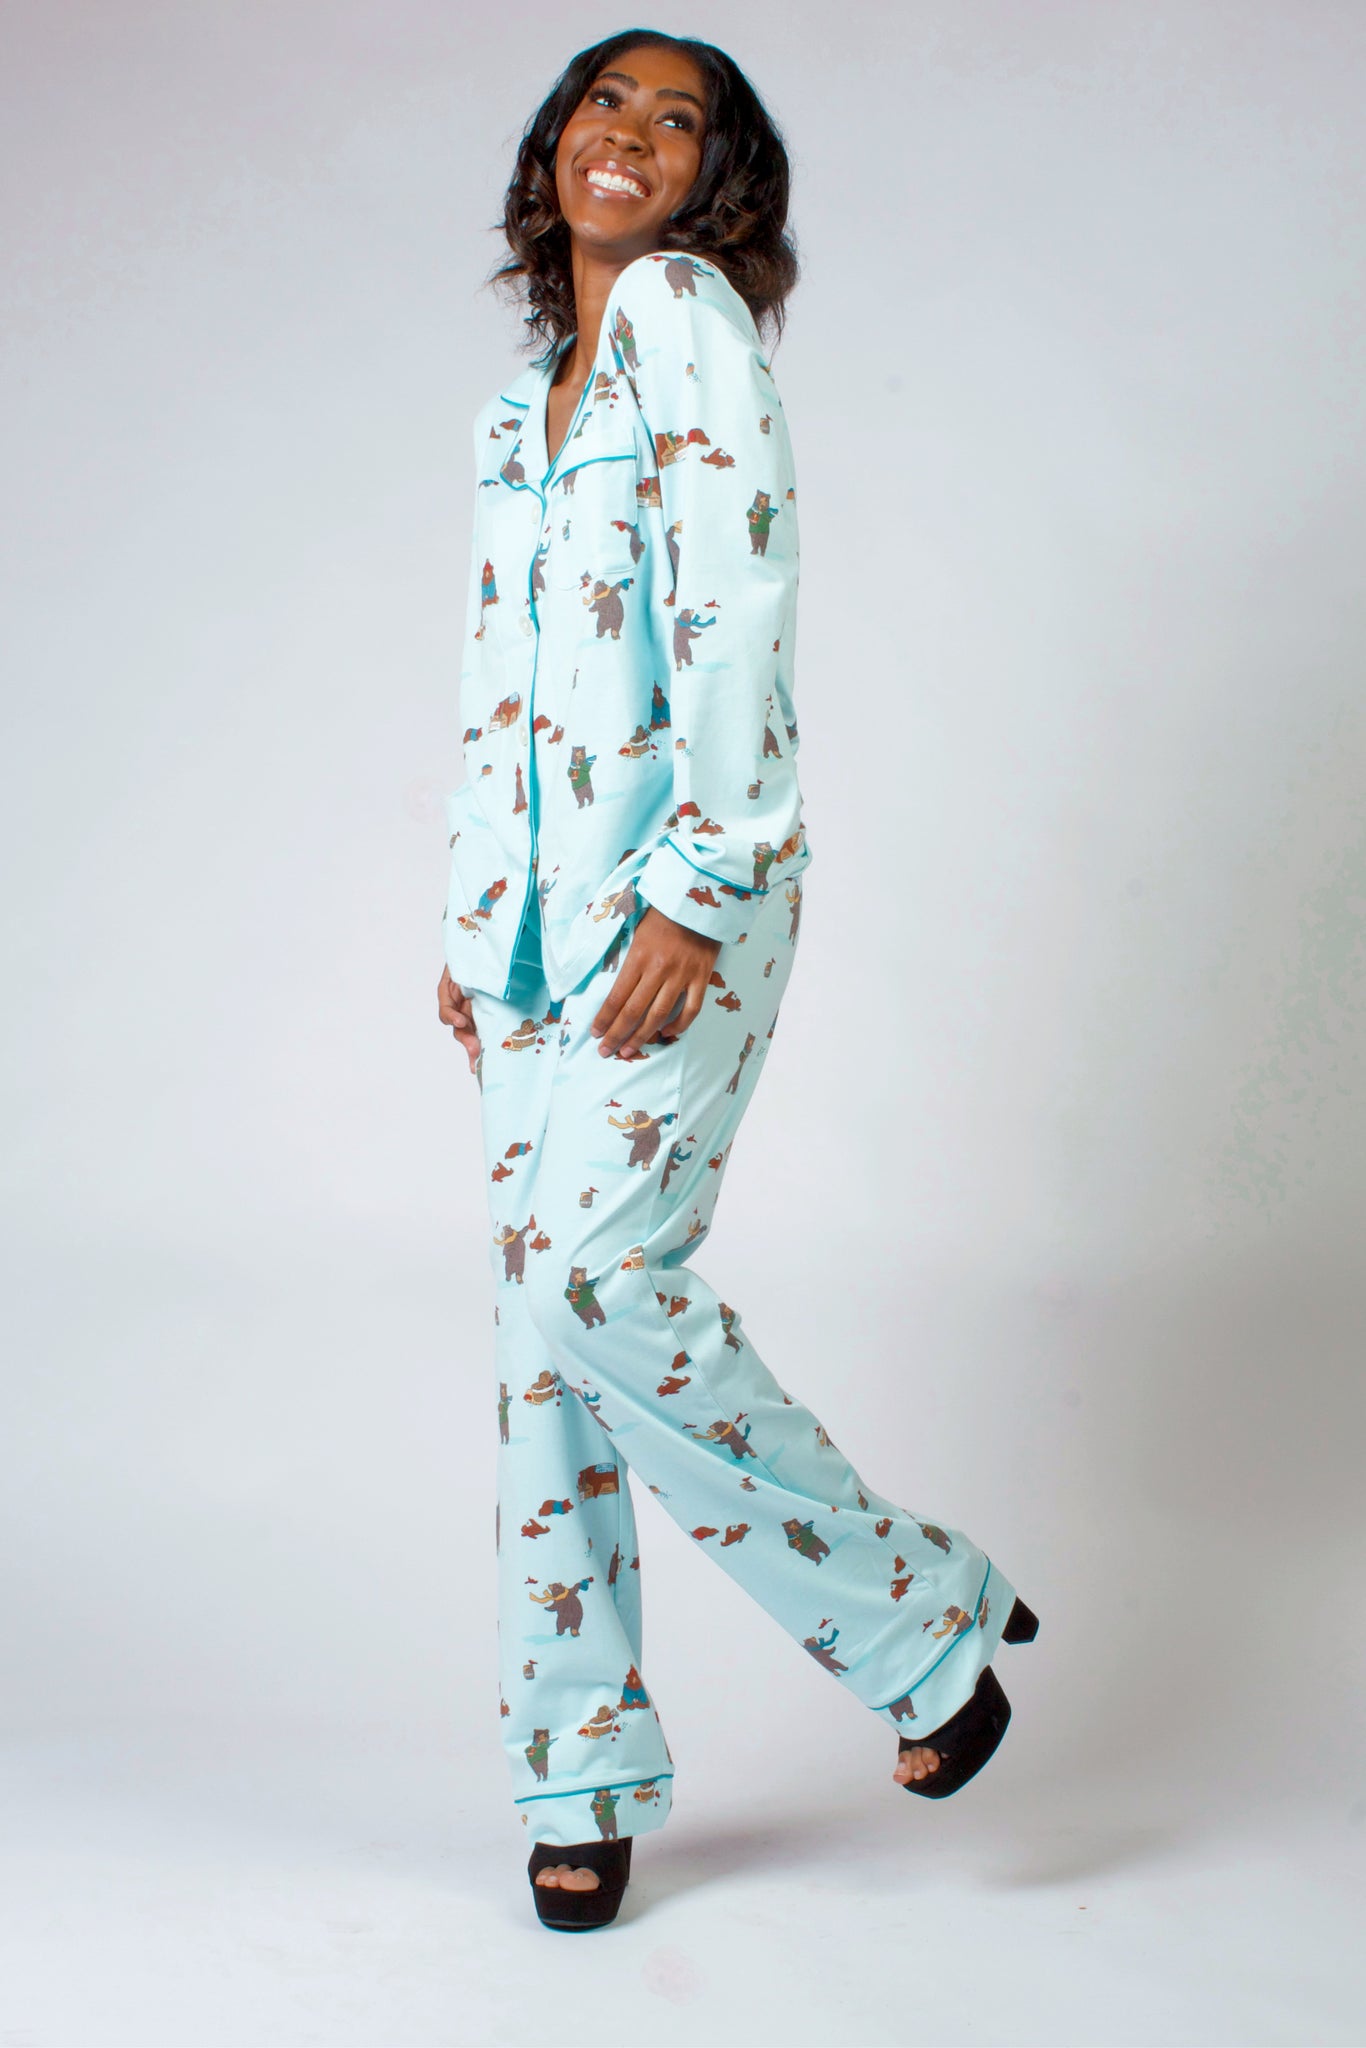 Snoopy Shop - Bedhead Pajamas